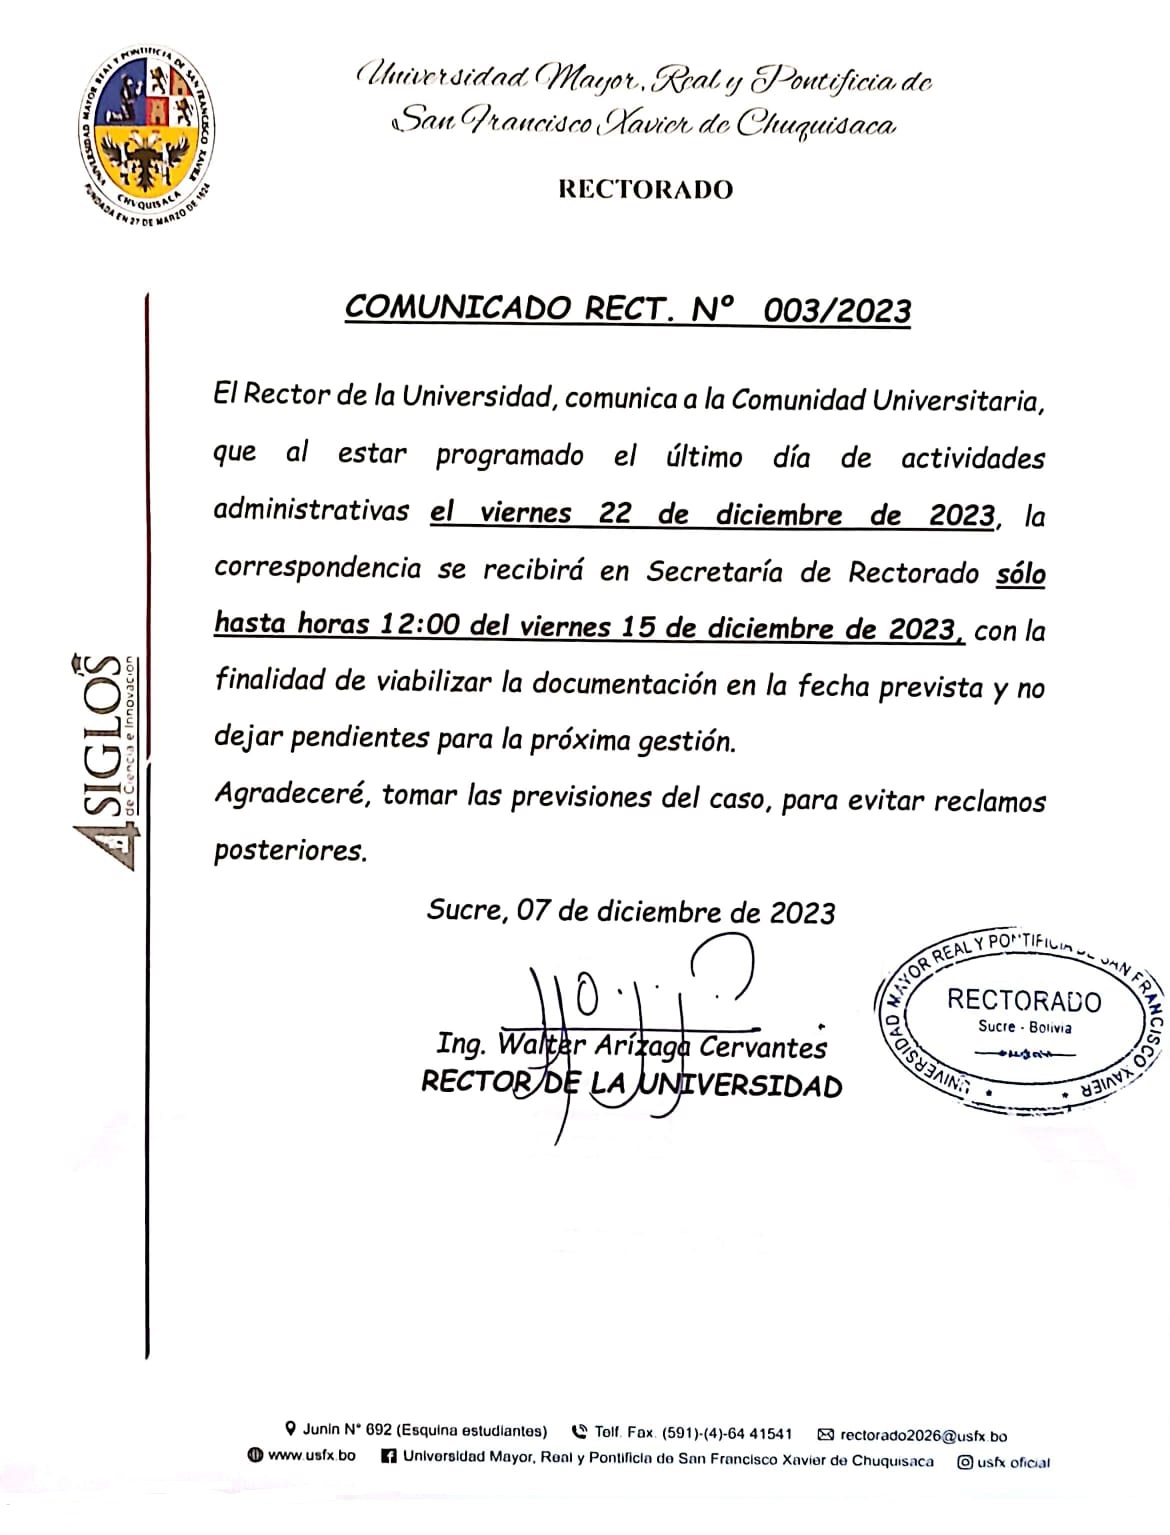 COMUNICADO RECTORAL. Nº 003/2023, RECEPCIÓN DE DOCUMENTACIÓN RECTORADO